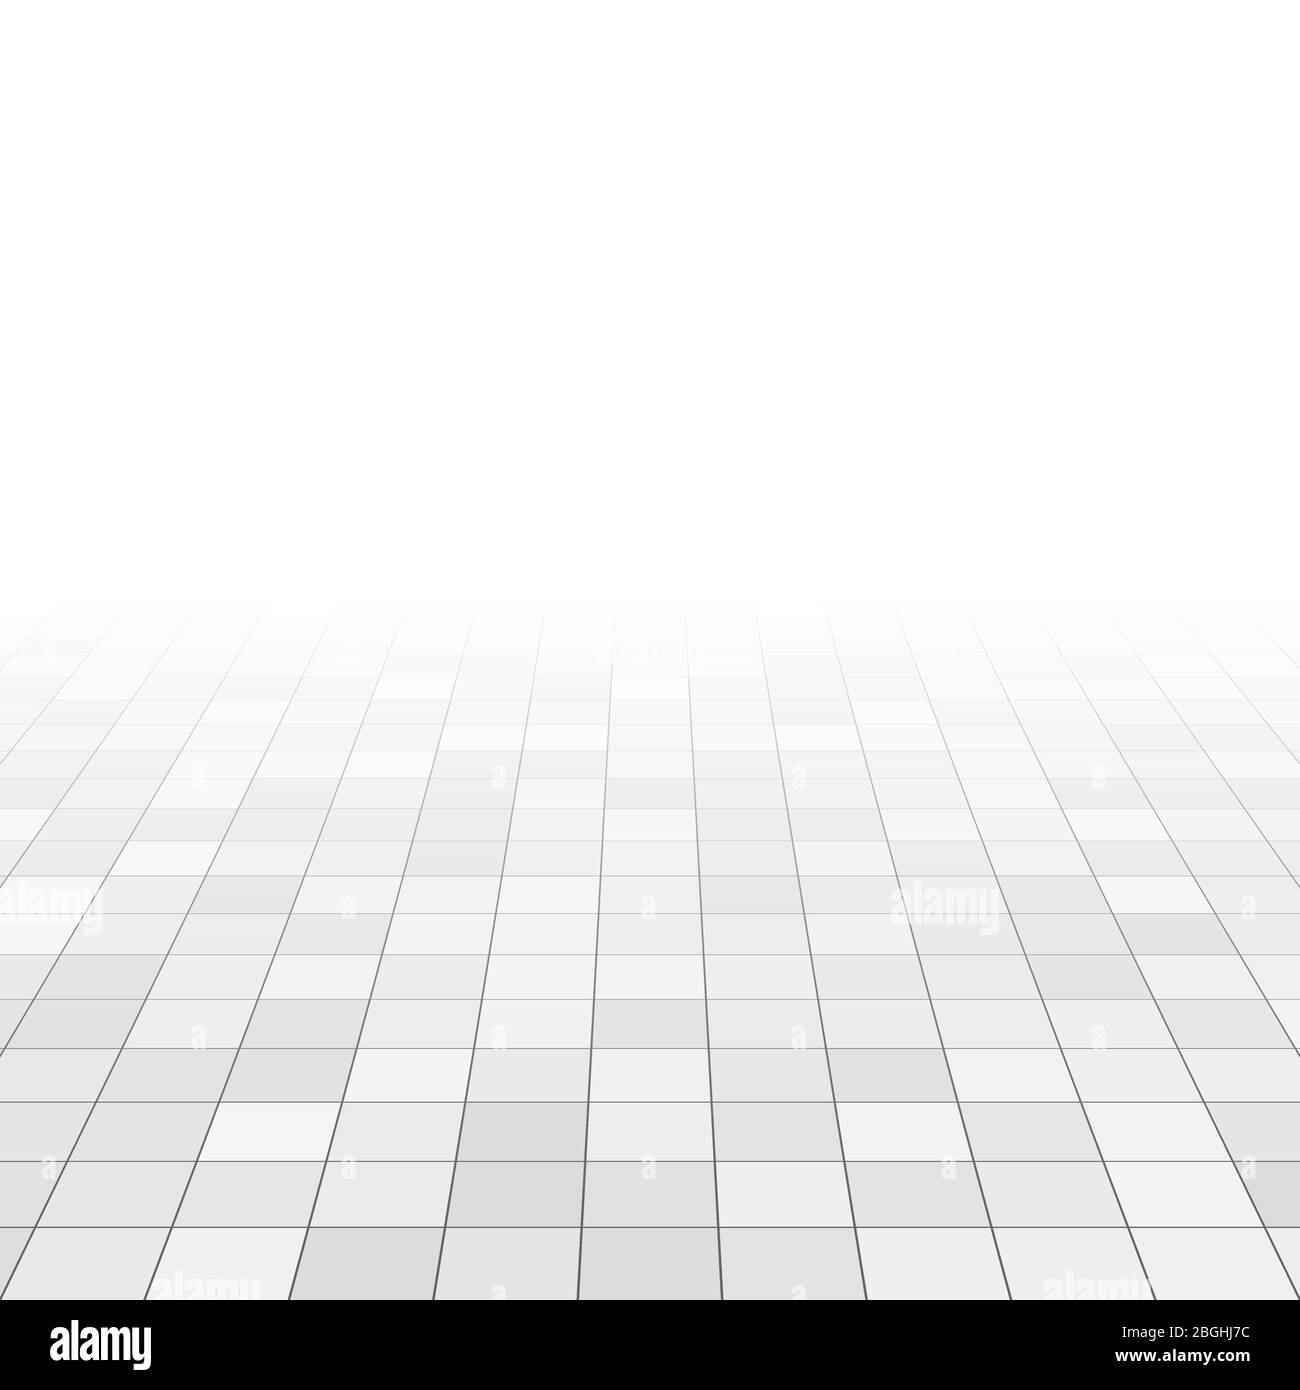 Carrelage blanc et gris en marbre sur le sol de la salle de bains. Mosaïques rectangulaires dans la grille de perspective. Arrière-plan vectoriel abstrait. Illustration de la texture de la tuile céramique carrée de surface Illustration de Vecteur